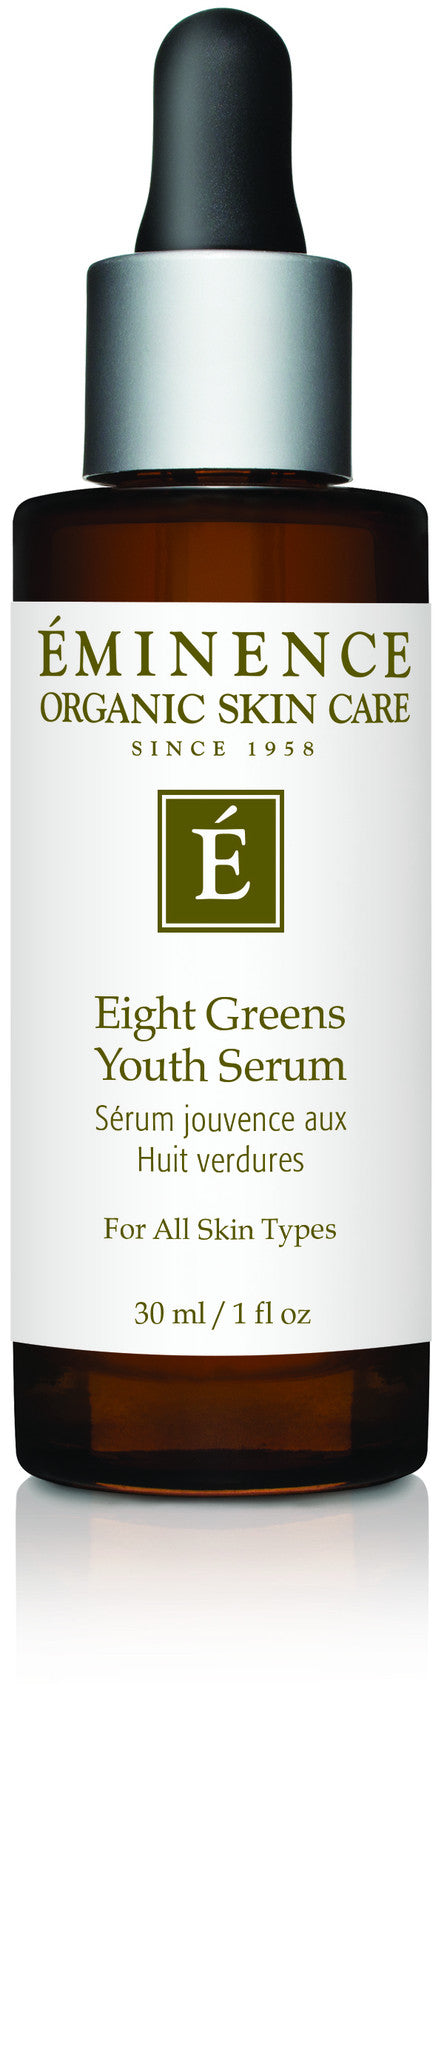 Eight Greens Youth Serum